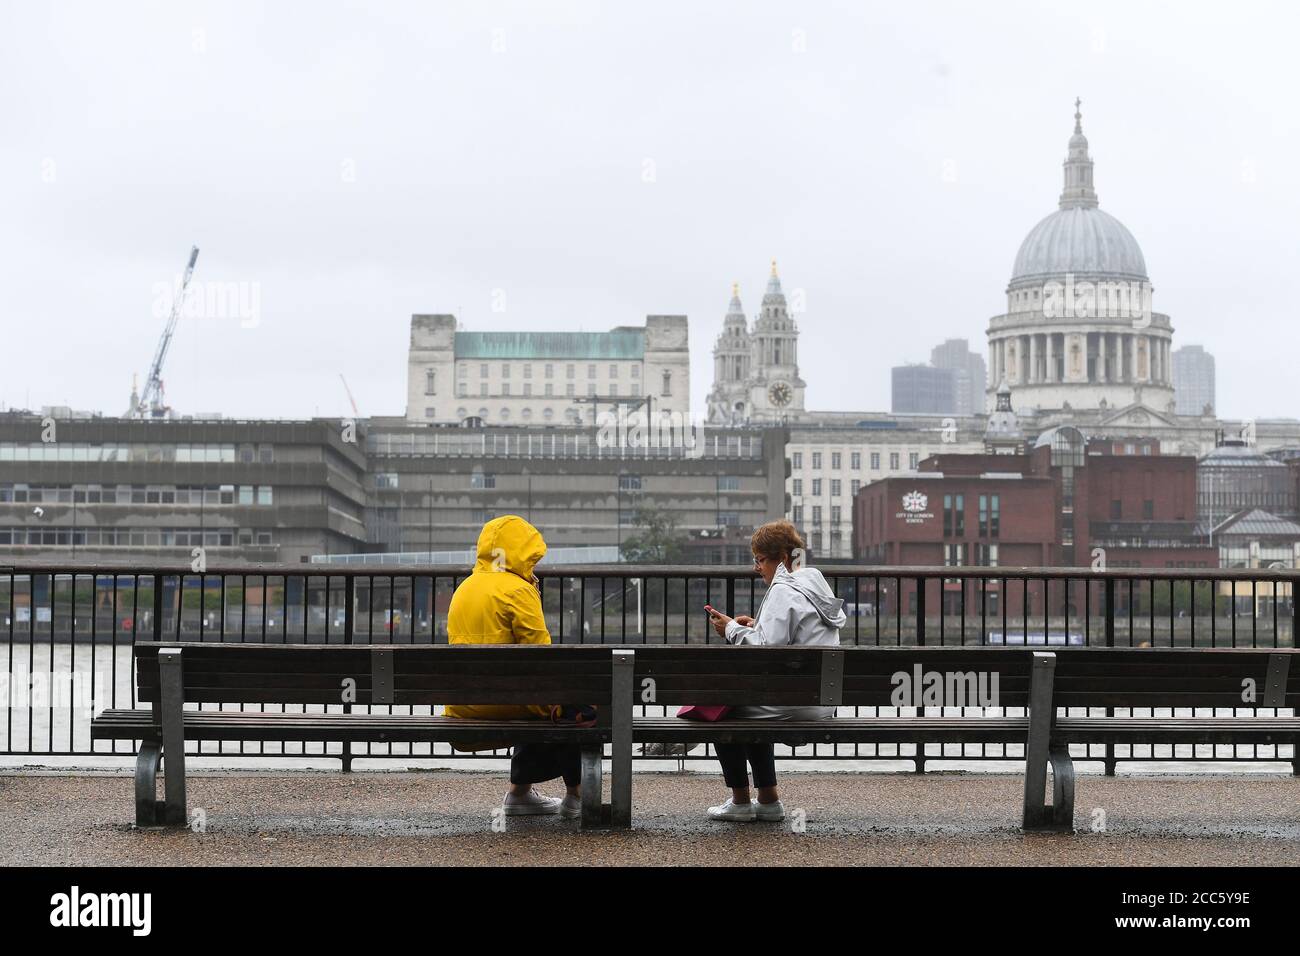 Die Leute sitzen auf einer Bank in Southbank in London, da viele Teile Großbritanniens vor der Ankunft von Sturm Ellen, der starke Winde bringen wird, feuchtes Wetter erleben. Stockfoto